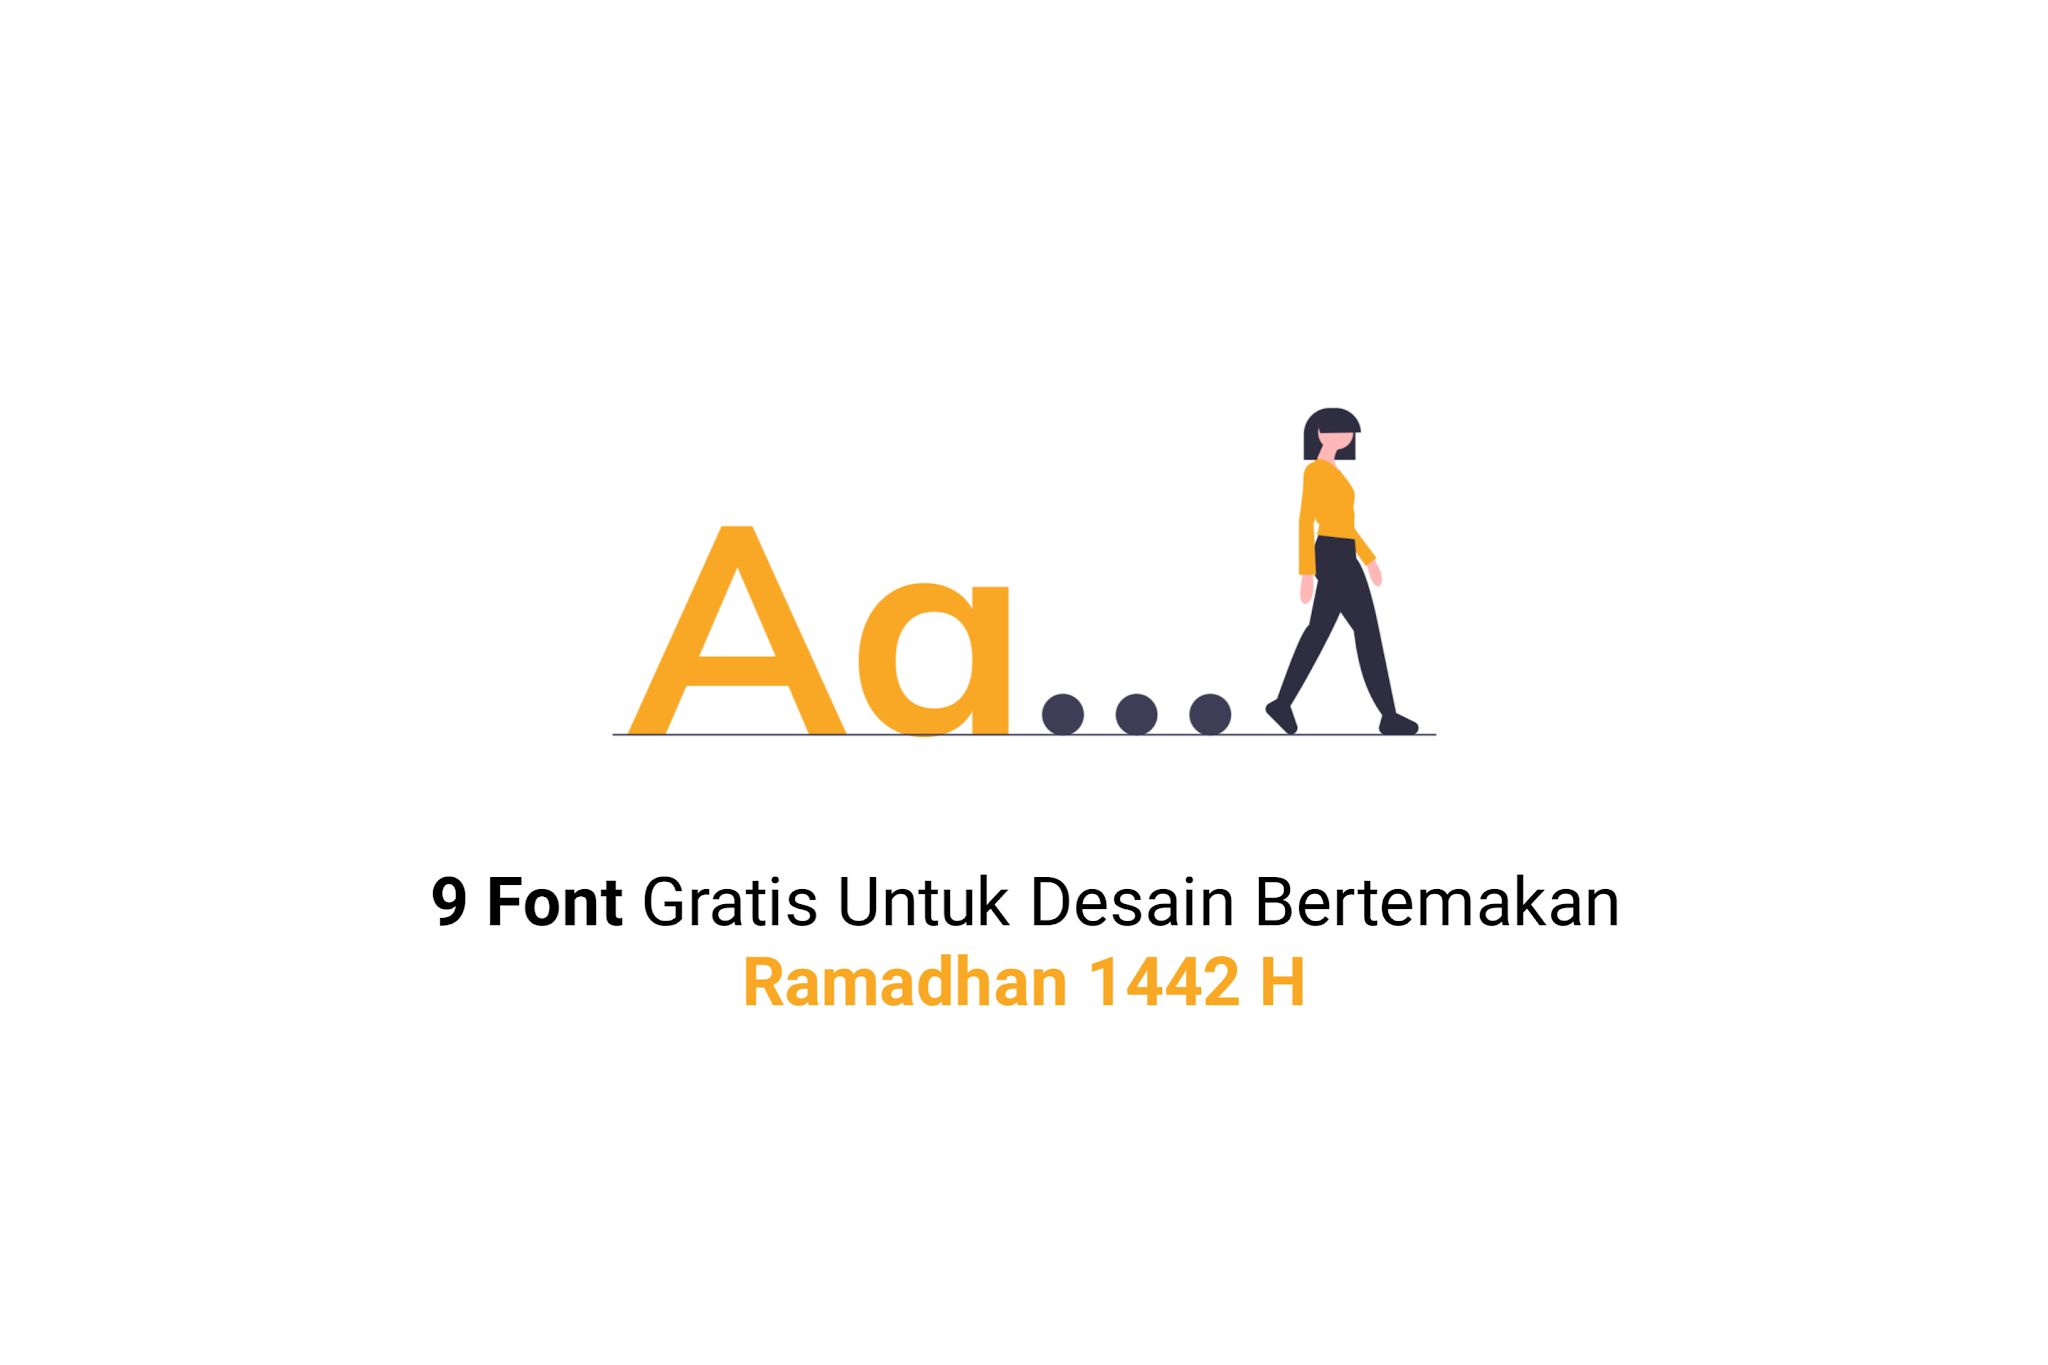 9 Font Gratis Untuk Desain Bertemakan Ramadhan 1442 H